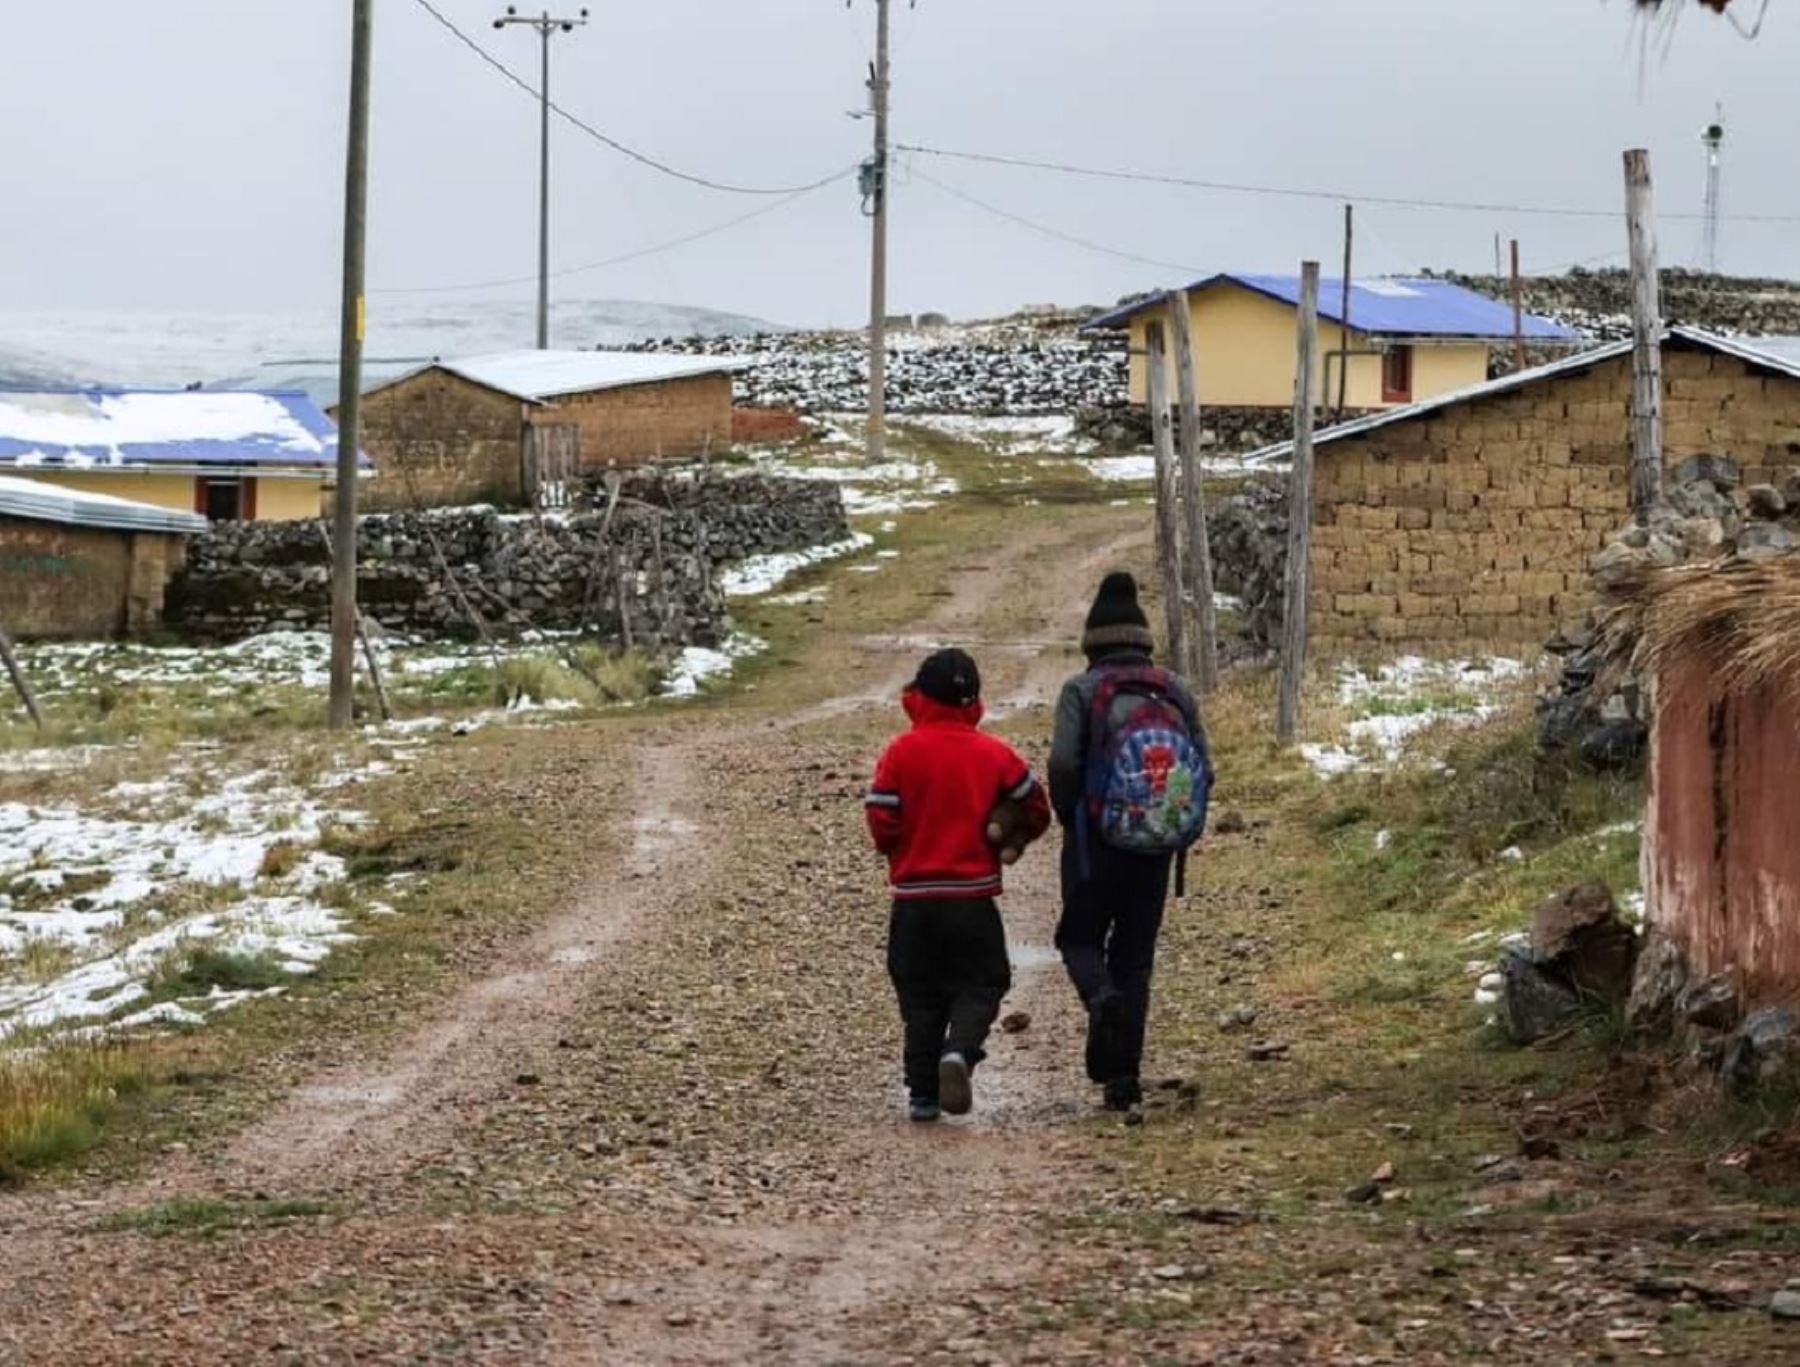 Hoy, lunes 22 de abril, entró en vigencia el horario de invierno en los colegios de Cusco. Se retrasa el ingreso de escolares debido a las bajas temperaturas que afectan a las zonas altoandinas. ANDINA/Difusión